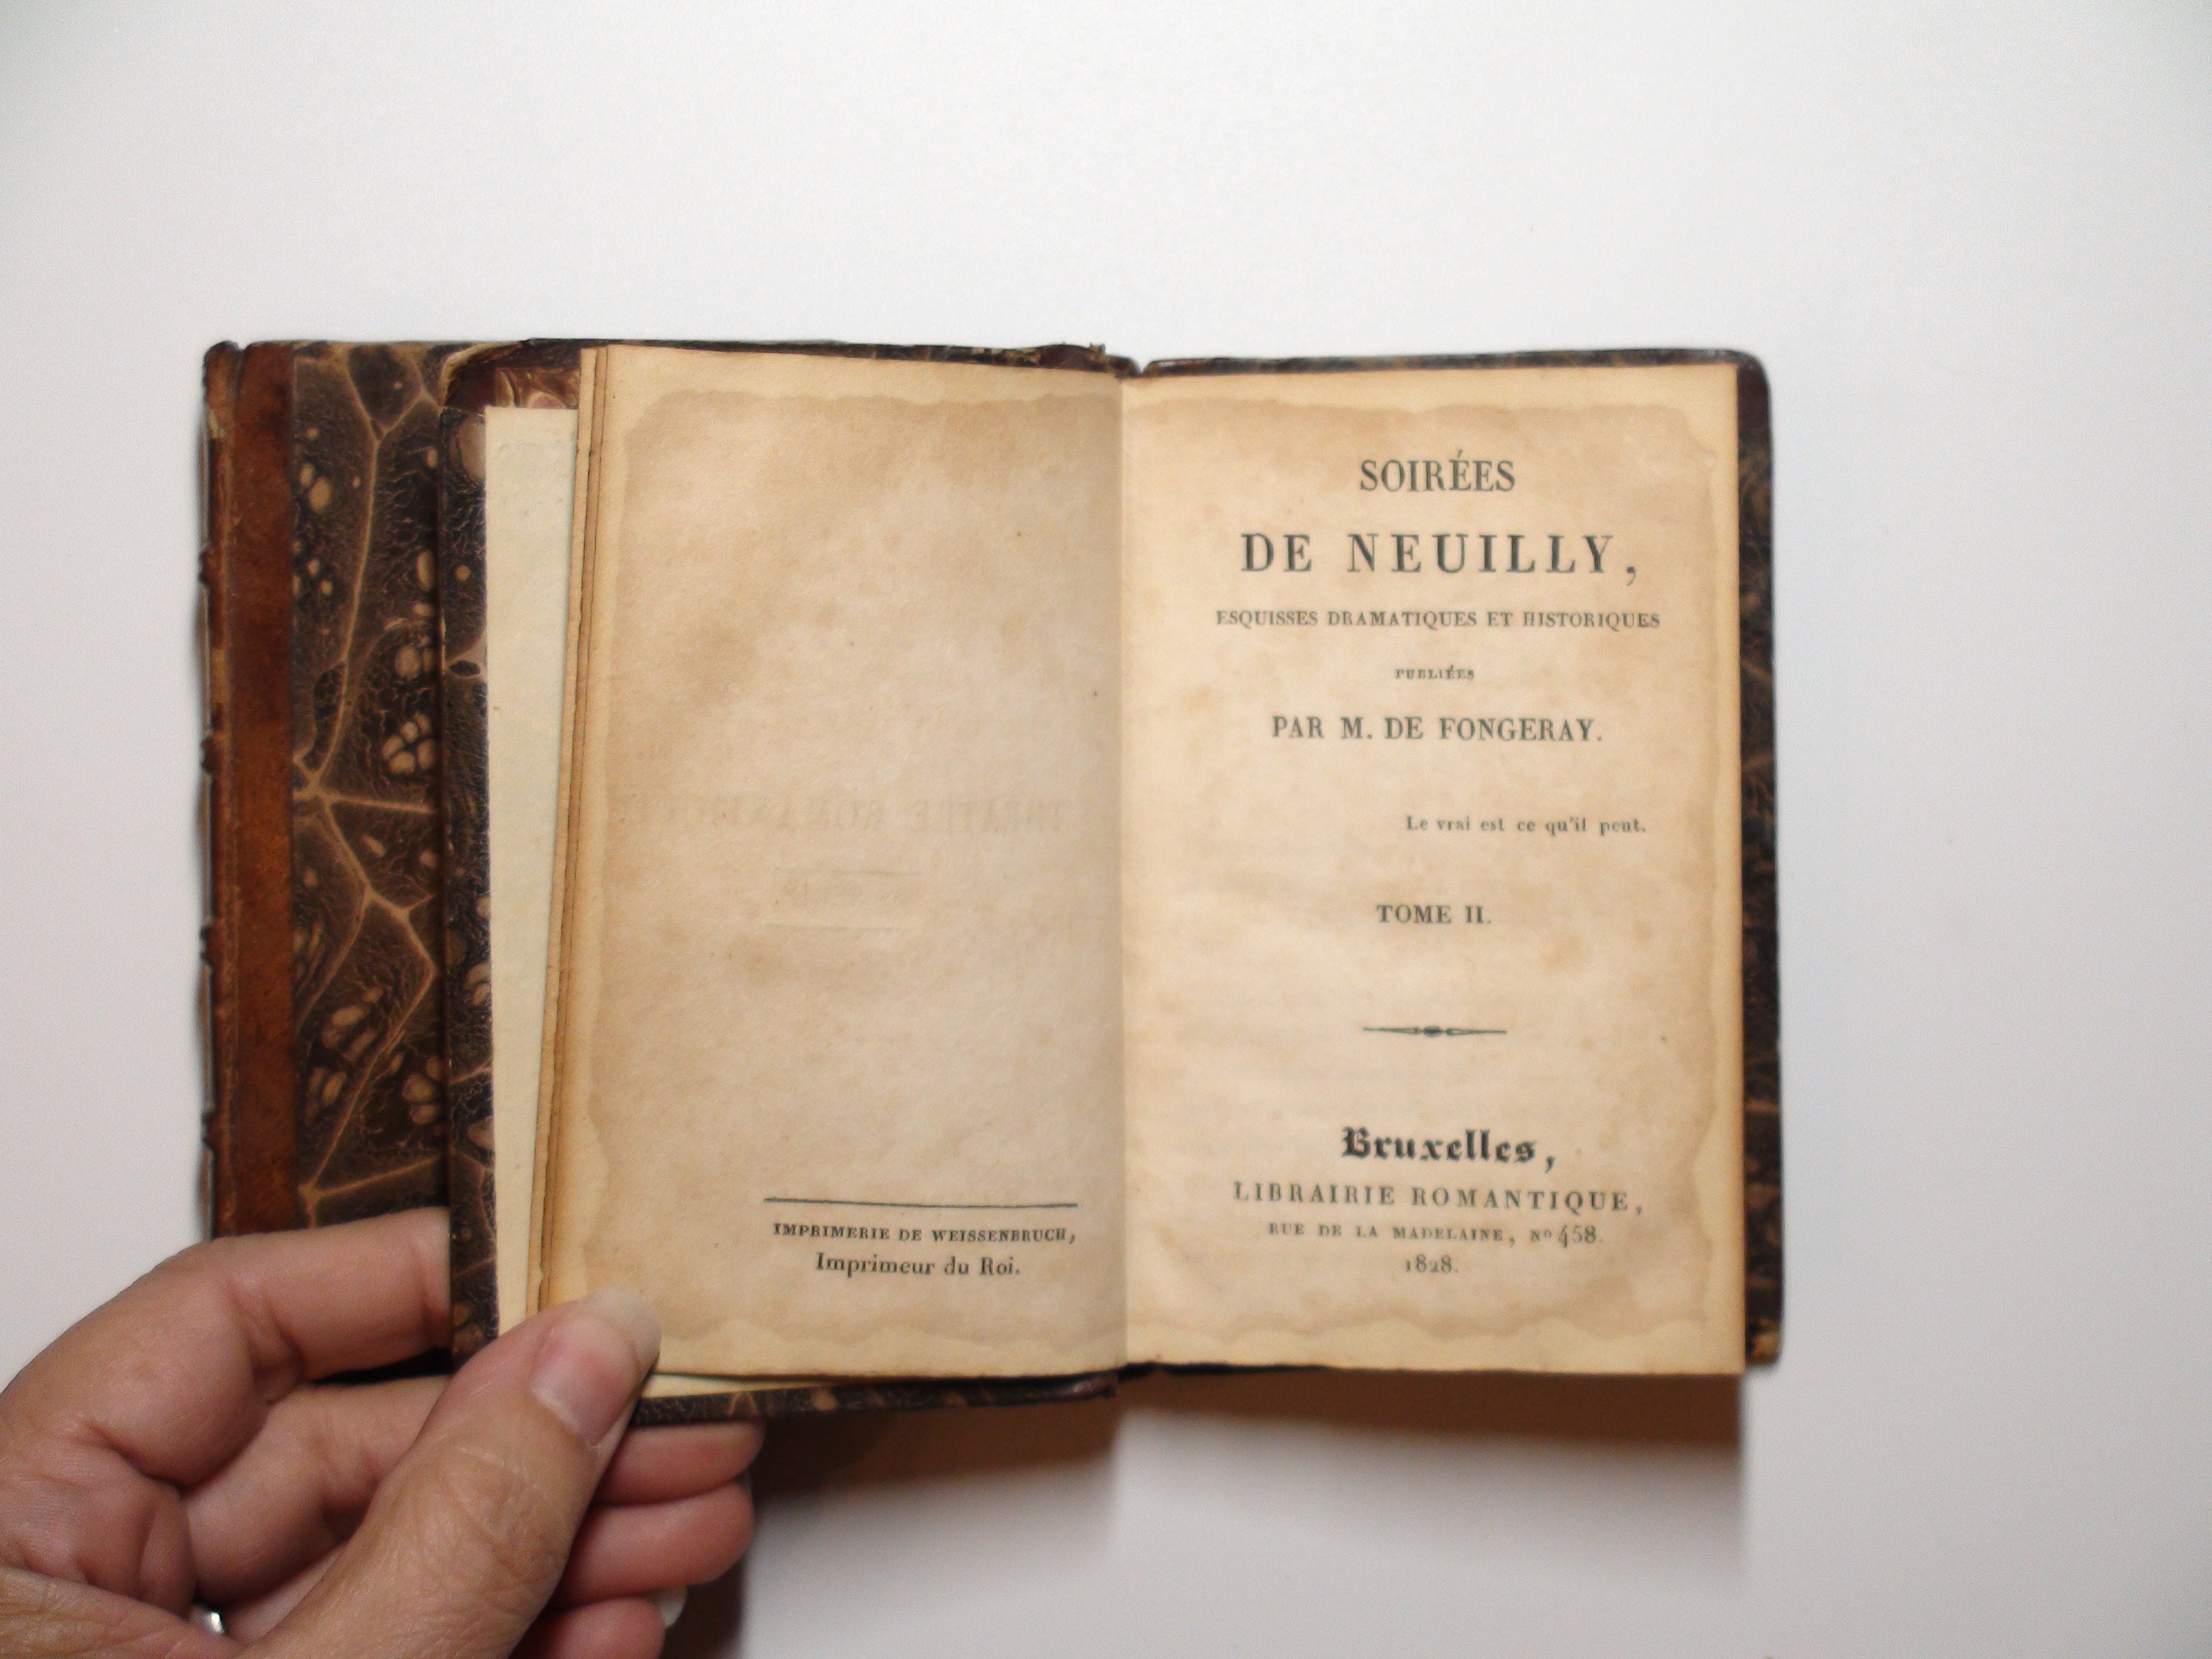 Les Soirées de Neuilly, M. de Fongeray, Two Volumes, French, 1st. Ed., 1828